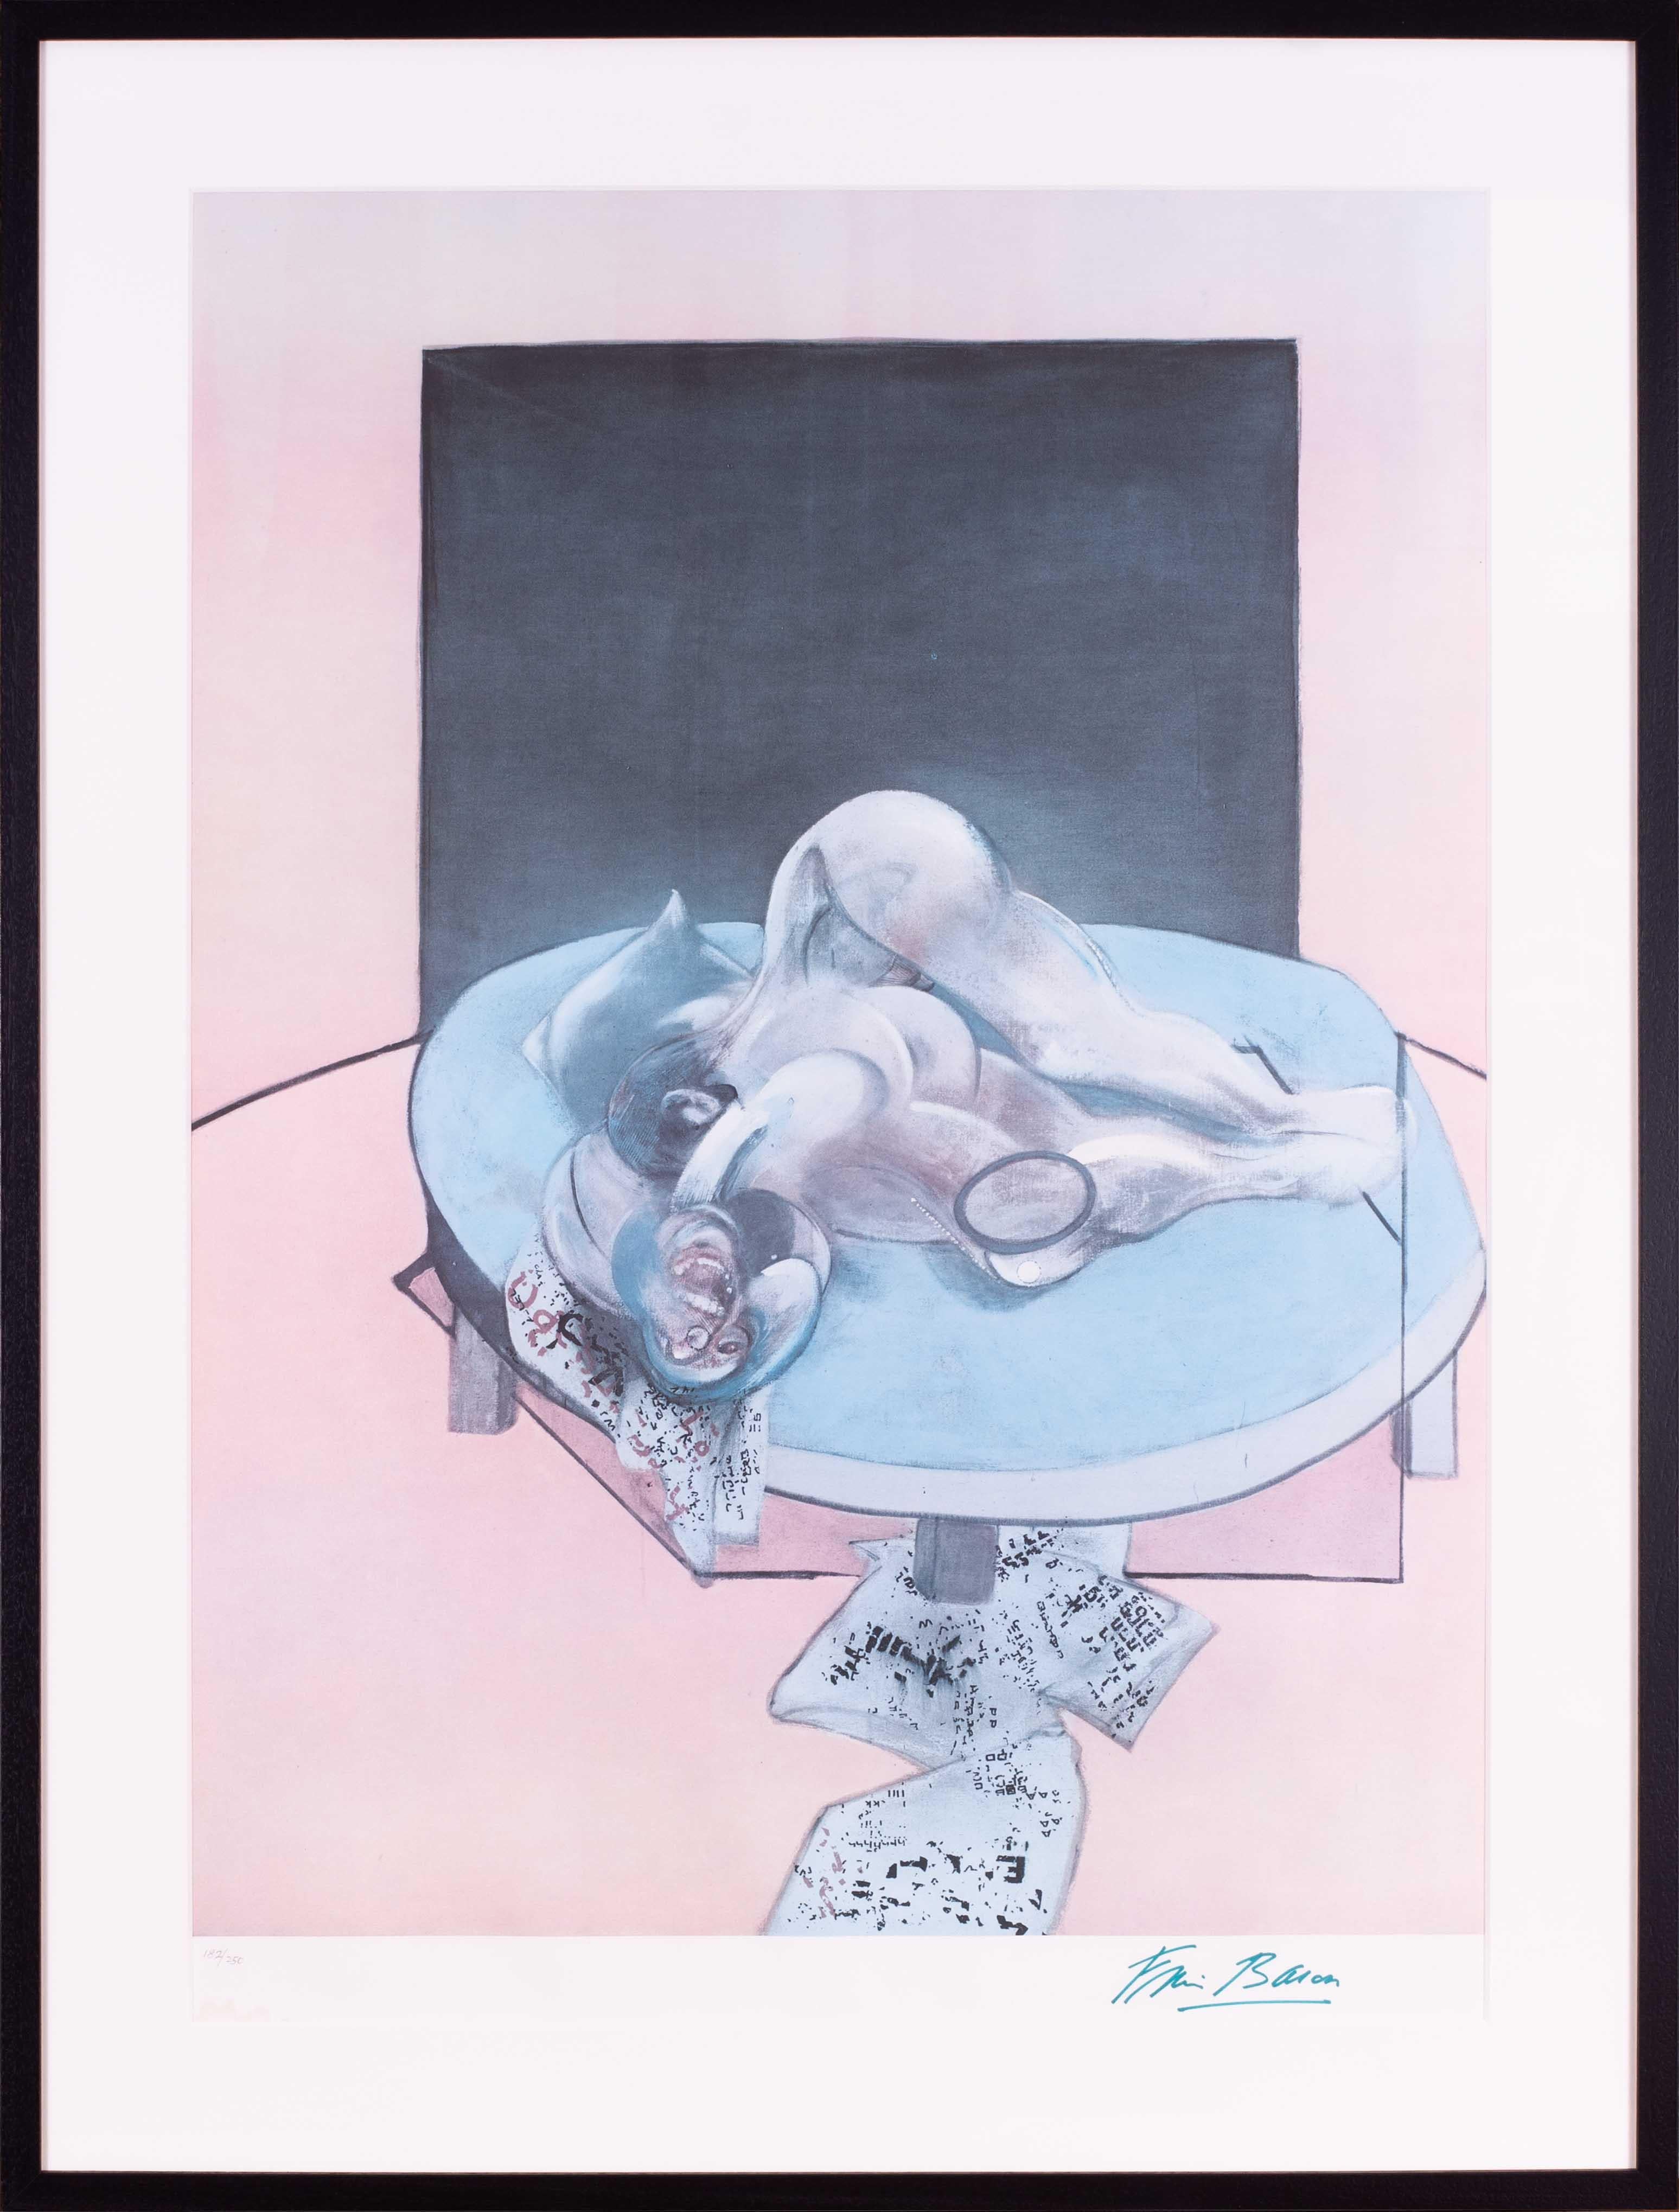 Lithographie offset de Francis Bacon, signée 182/250, étude du corps humain, 1980